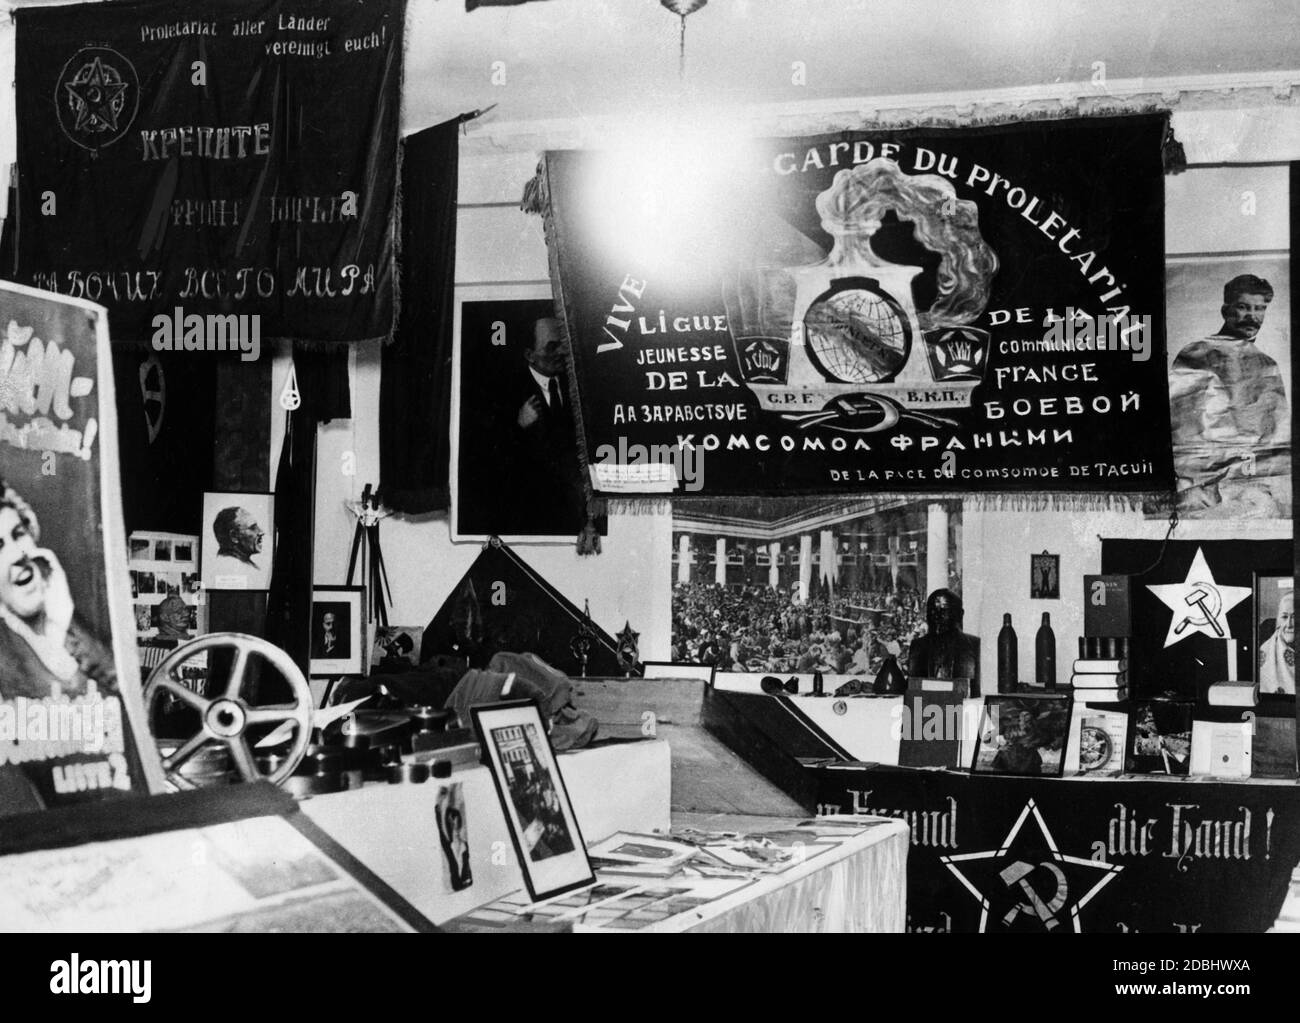 Nel Museo della prima Rivoluzione, all'angolo di Jueden- und Parochialstrasse a Berlino, gli organizzatori della mostra nazionalsocialista hanno diffamato i loro oppositori politici. Sala espositiva con bandiera KPD, che secondo il testo originale del 1933 è stata donata dai comunisti francesi e si trova sotto il letto di Thaelmann. Foto Stock